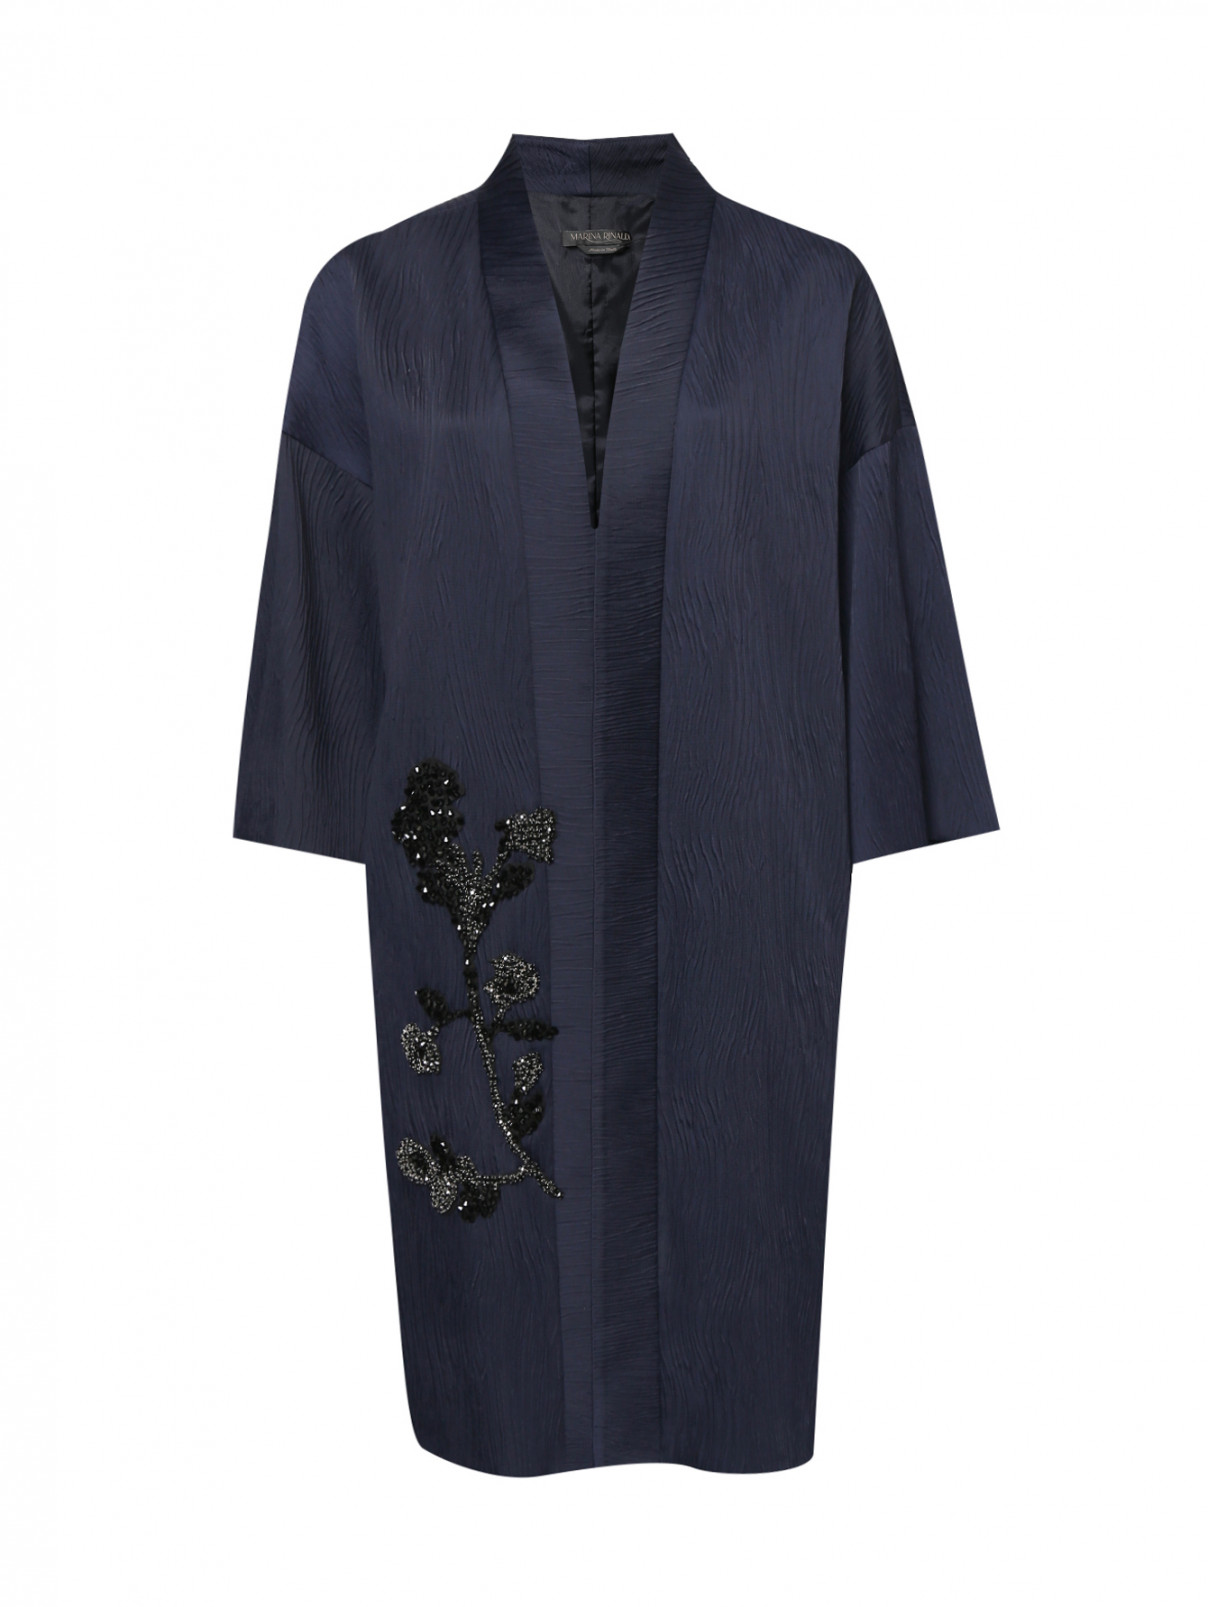 Пальто легкое из жатой ткани с декором из страз Marina Rinaldi  –  Общий вид  – Цвет:  Синий